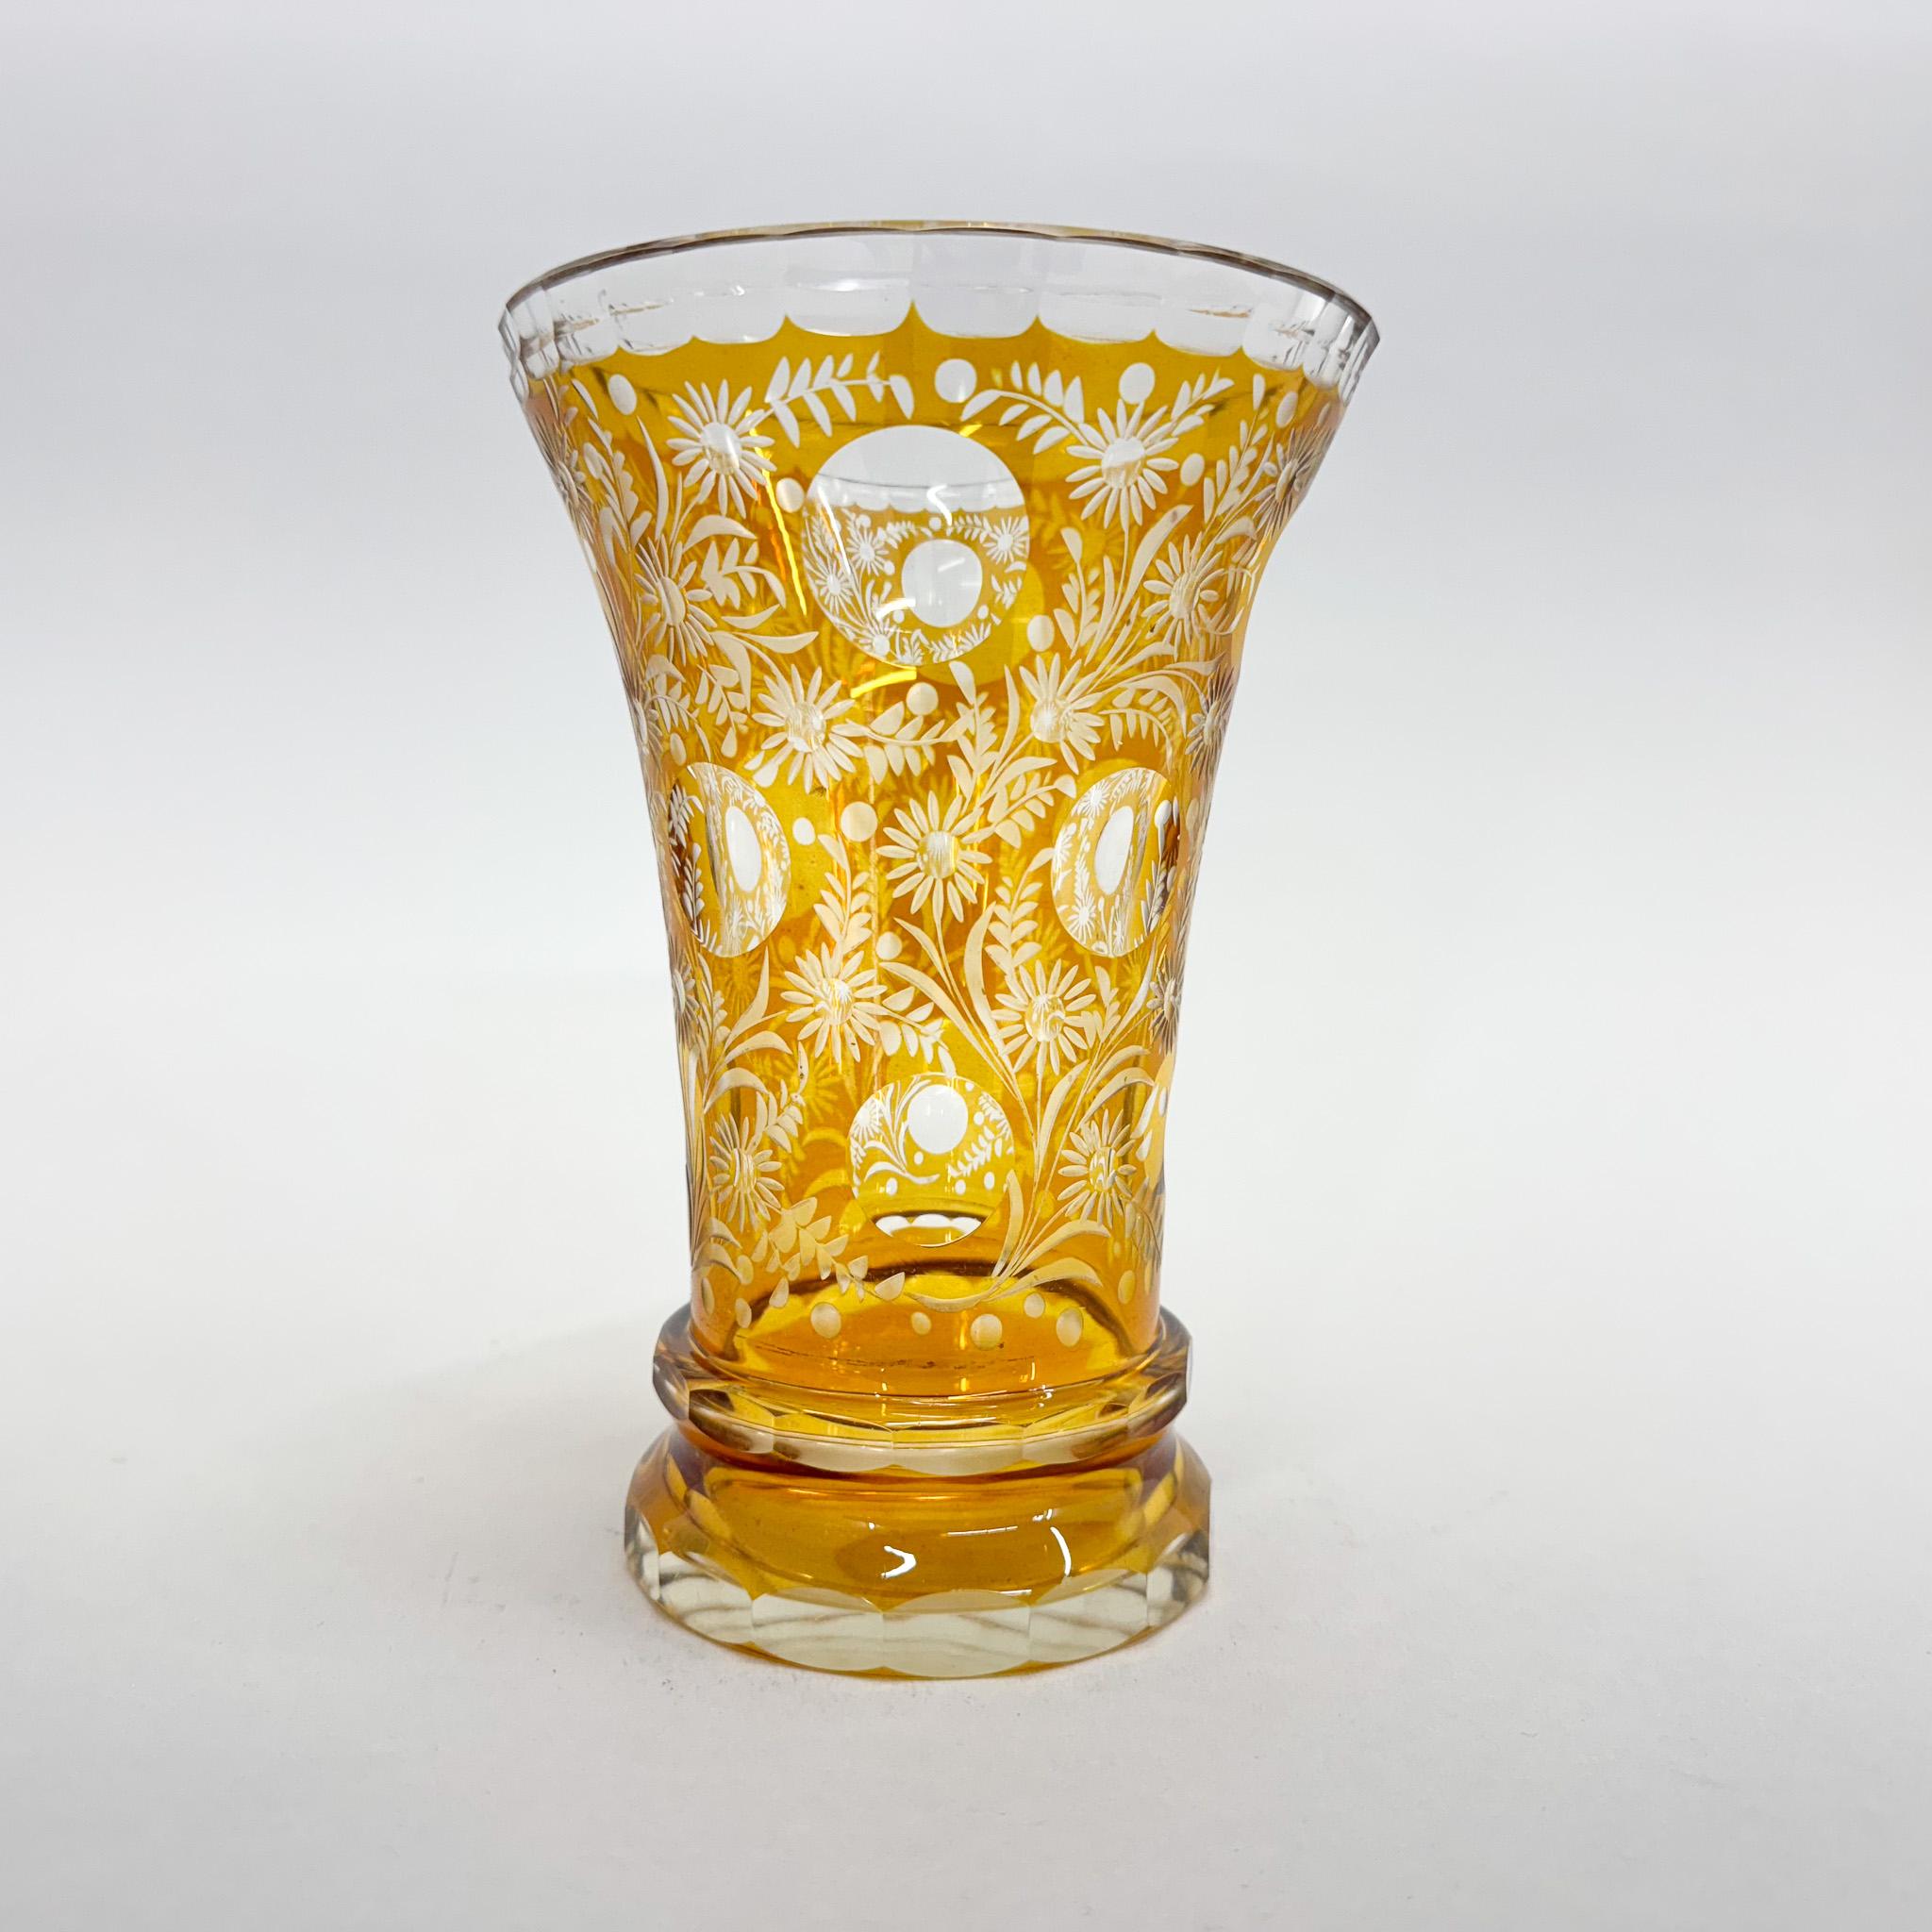 Verre transparent, recouvert d'une glaçure jaune. Le vase date du début du 20e siècle et est richement taillé à la main avec des motifs floraux. Il est doté d'une solide base ronde biseautée. Bon état vintage.